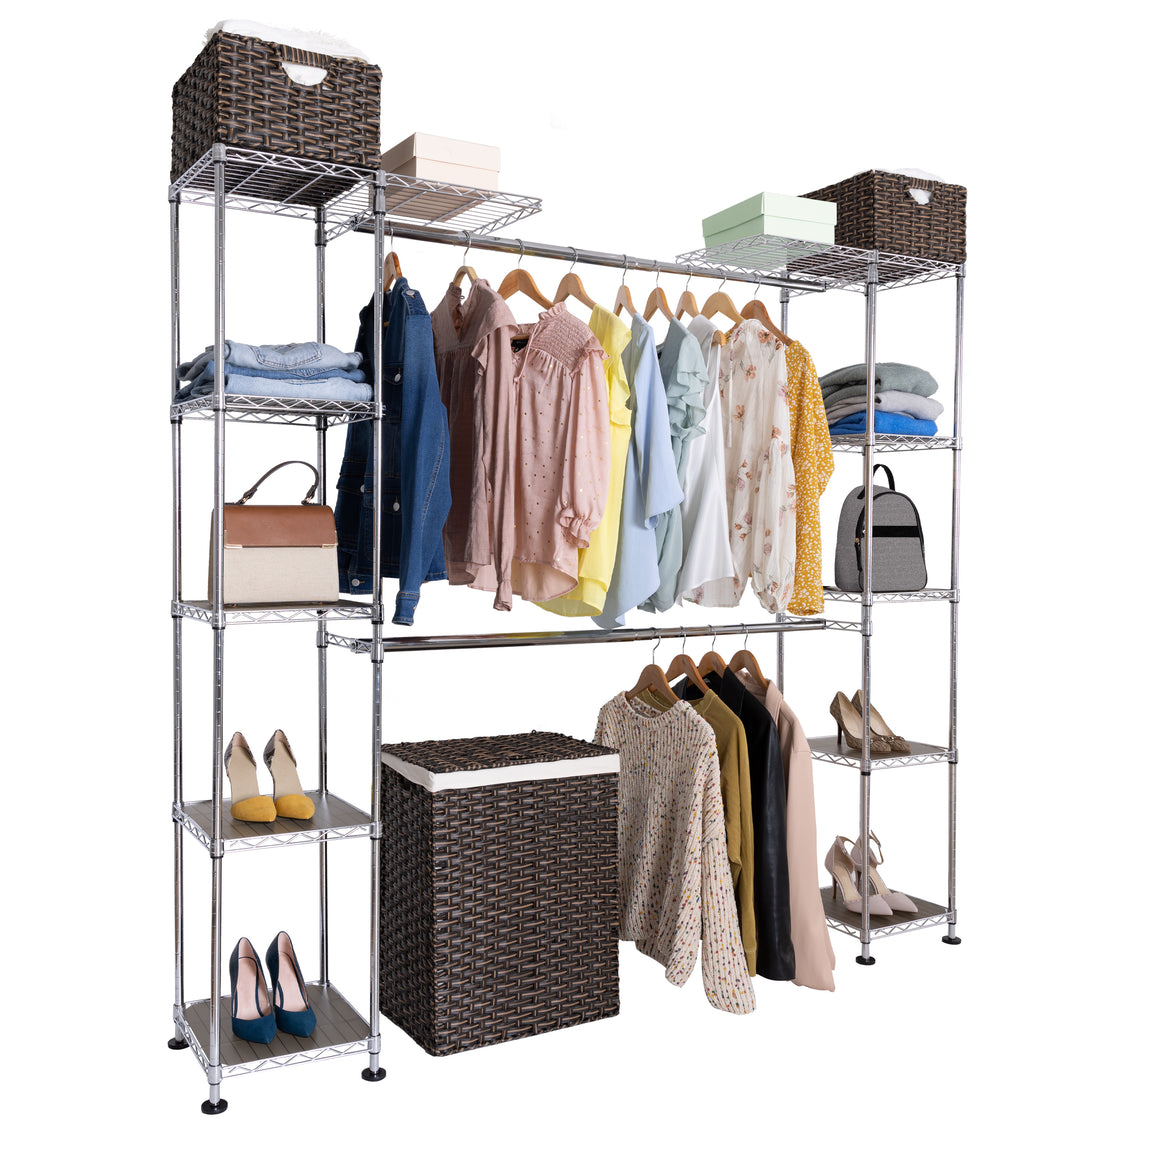 Expandable Closet Shelf, Adjustable Shelf, Dividers Closet